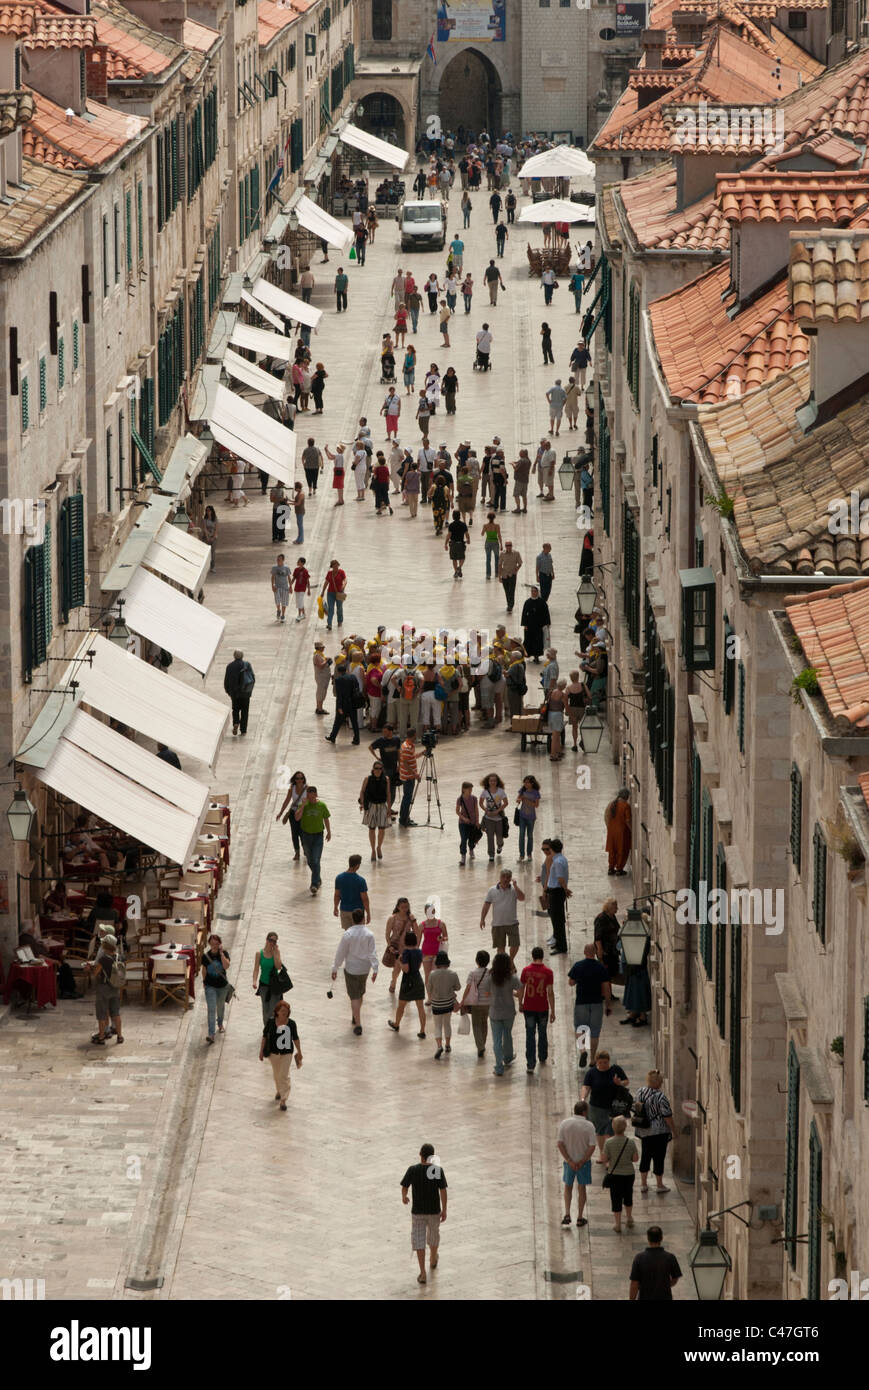 L'Stradan est la rue principale de la vieille ville, Dubrovnik, Croatie. Très populaire auprès des touristes il a de nombreux magasins et restaurants. Banque D'Images